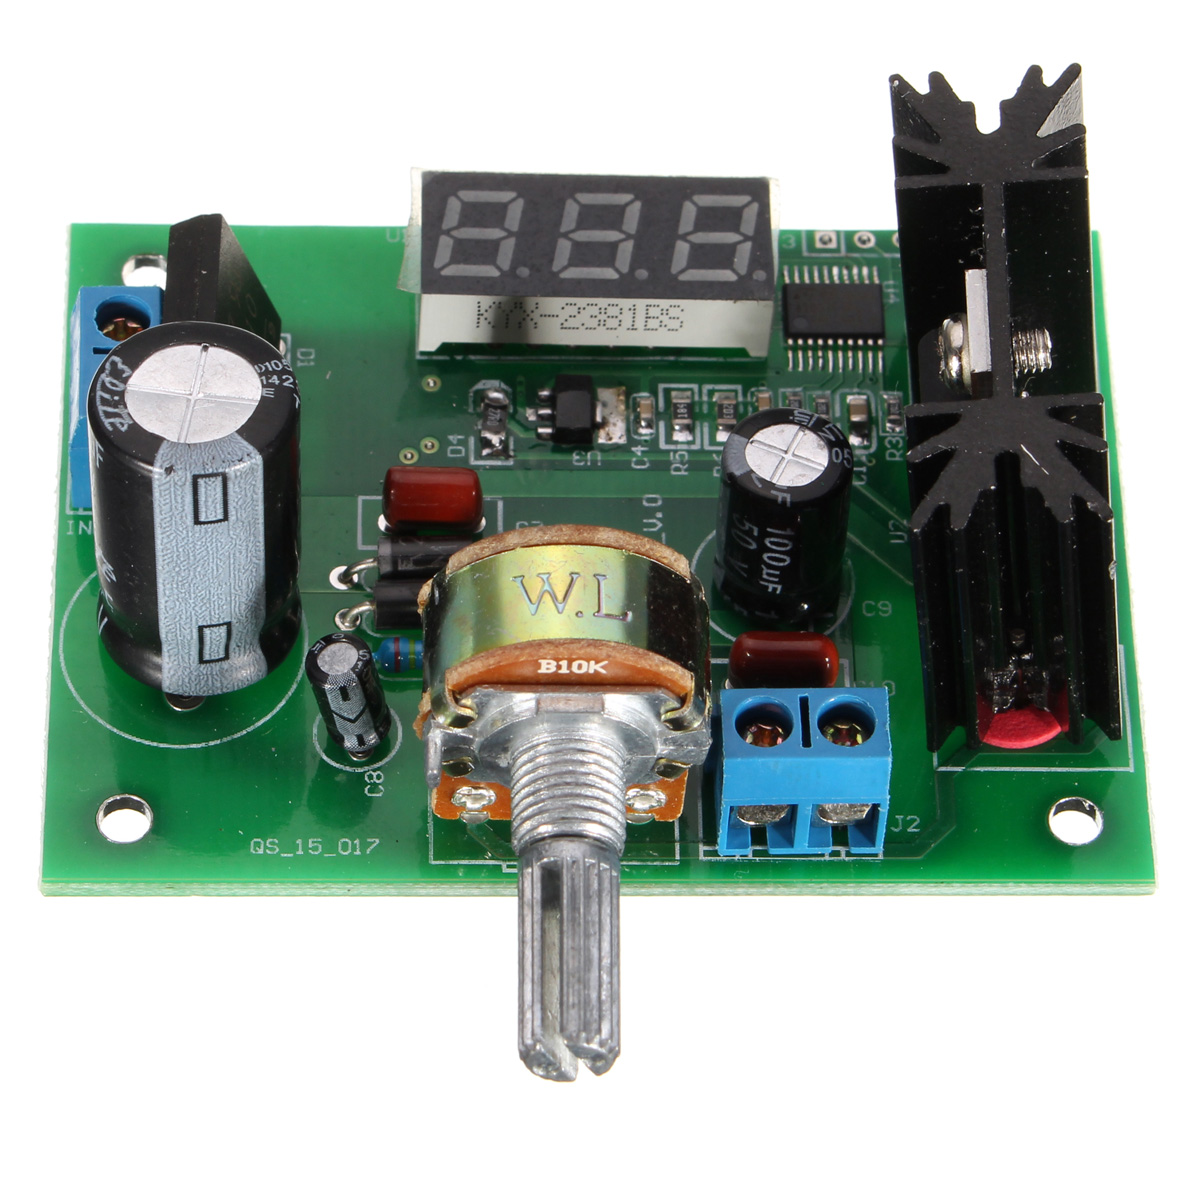 LM317-Adjustable-Voltage-Regulator-Step-Down-Power-Supply-Module-LED-Meter-1019105